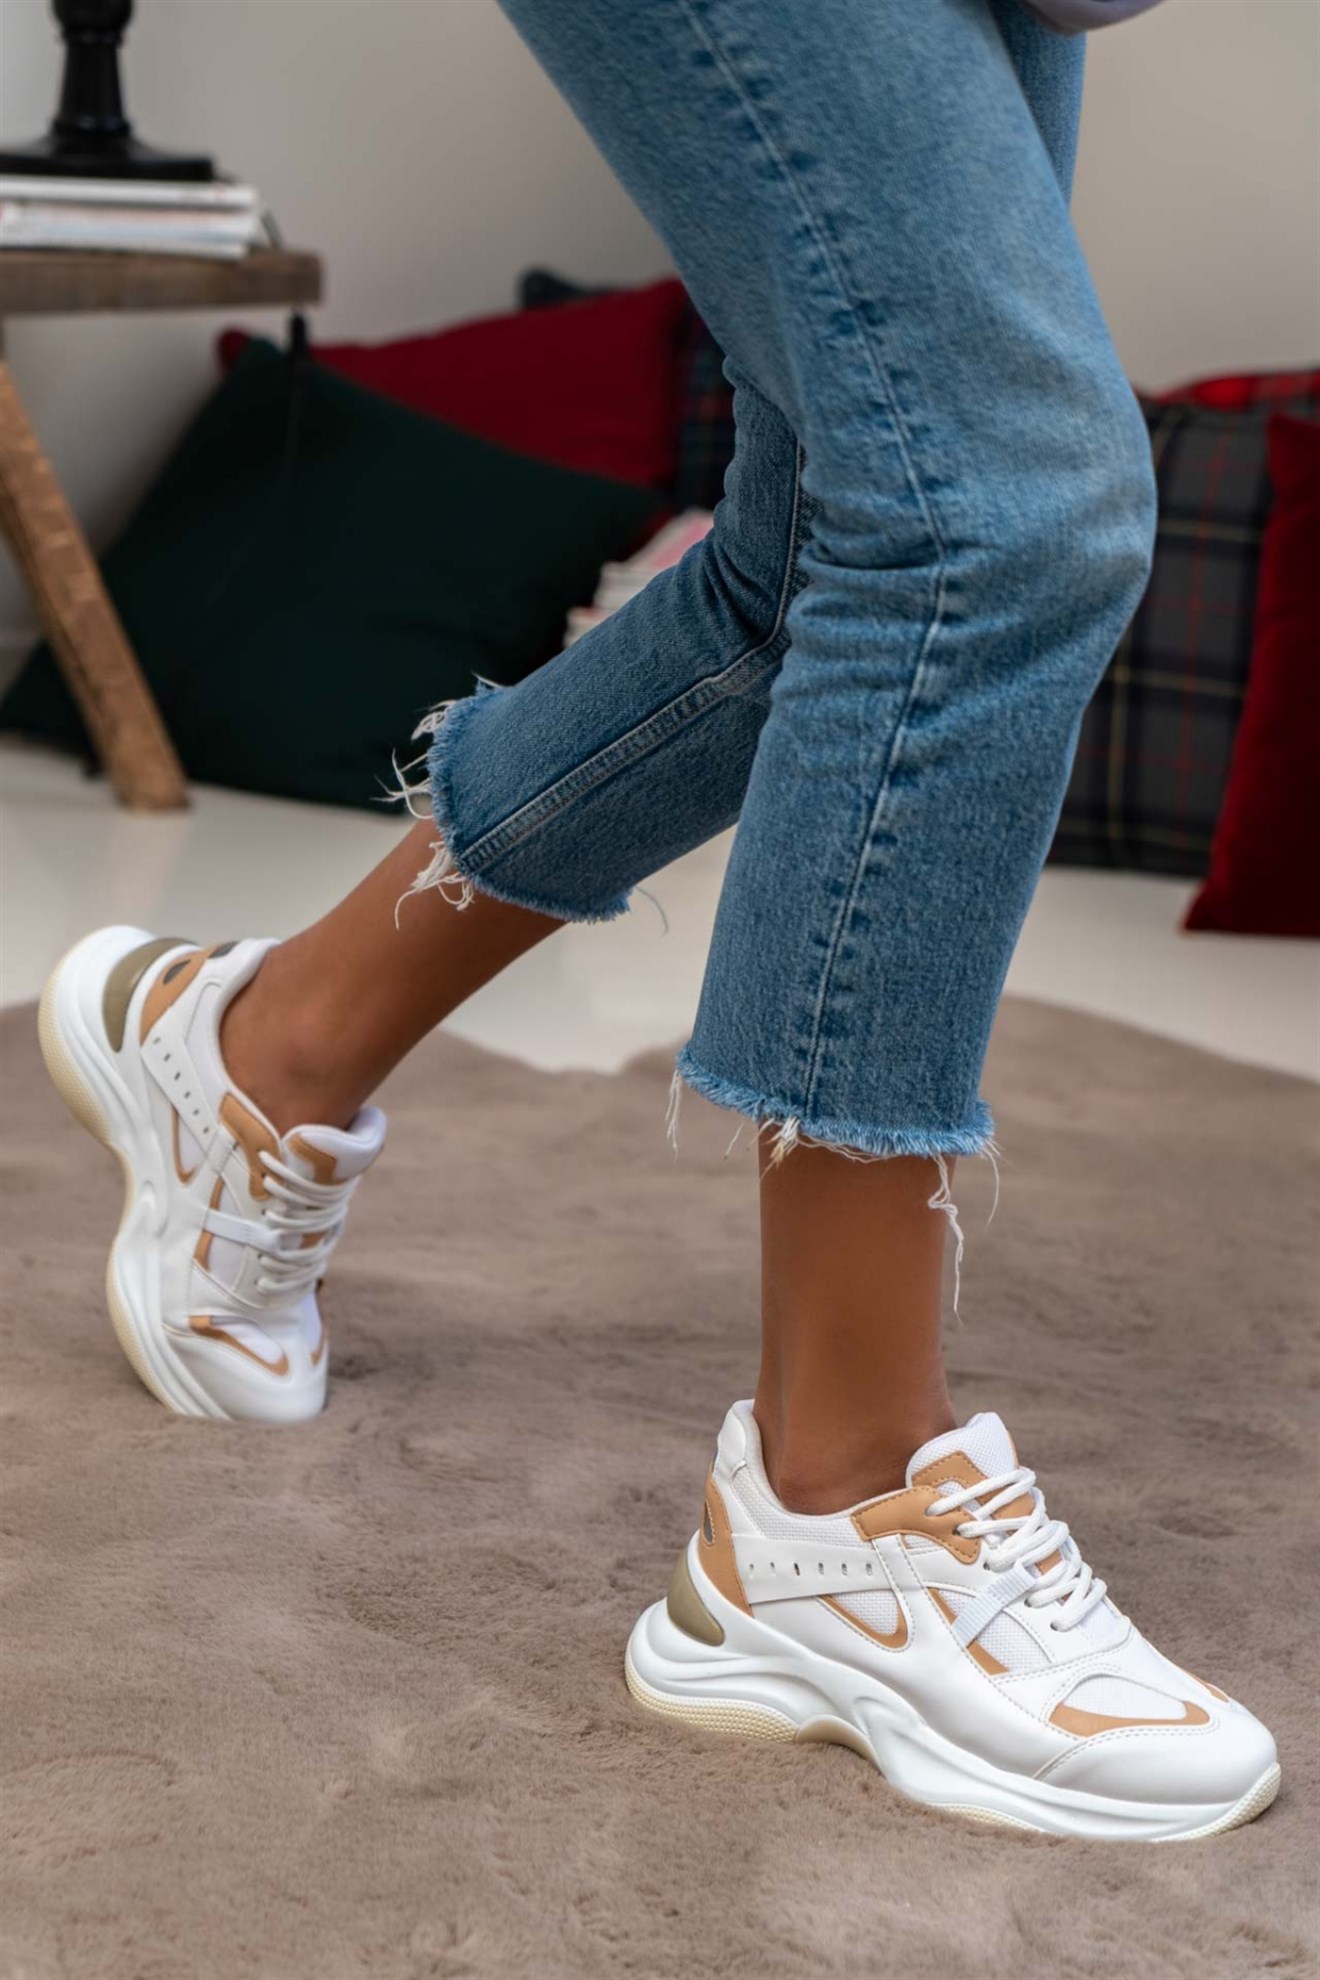 Reyna Beyaz Bej Mat Kalın Taban Bağlı Kadın Sneakers Spor Ayakkabı